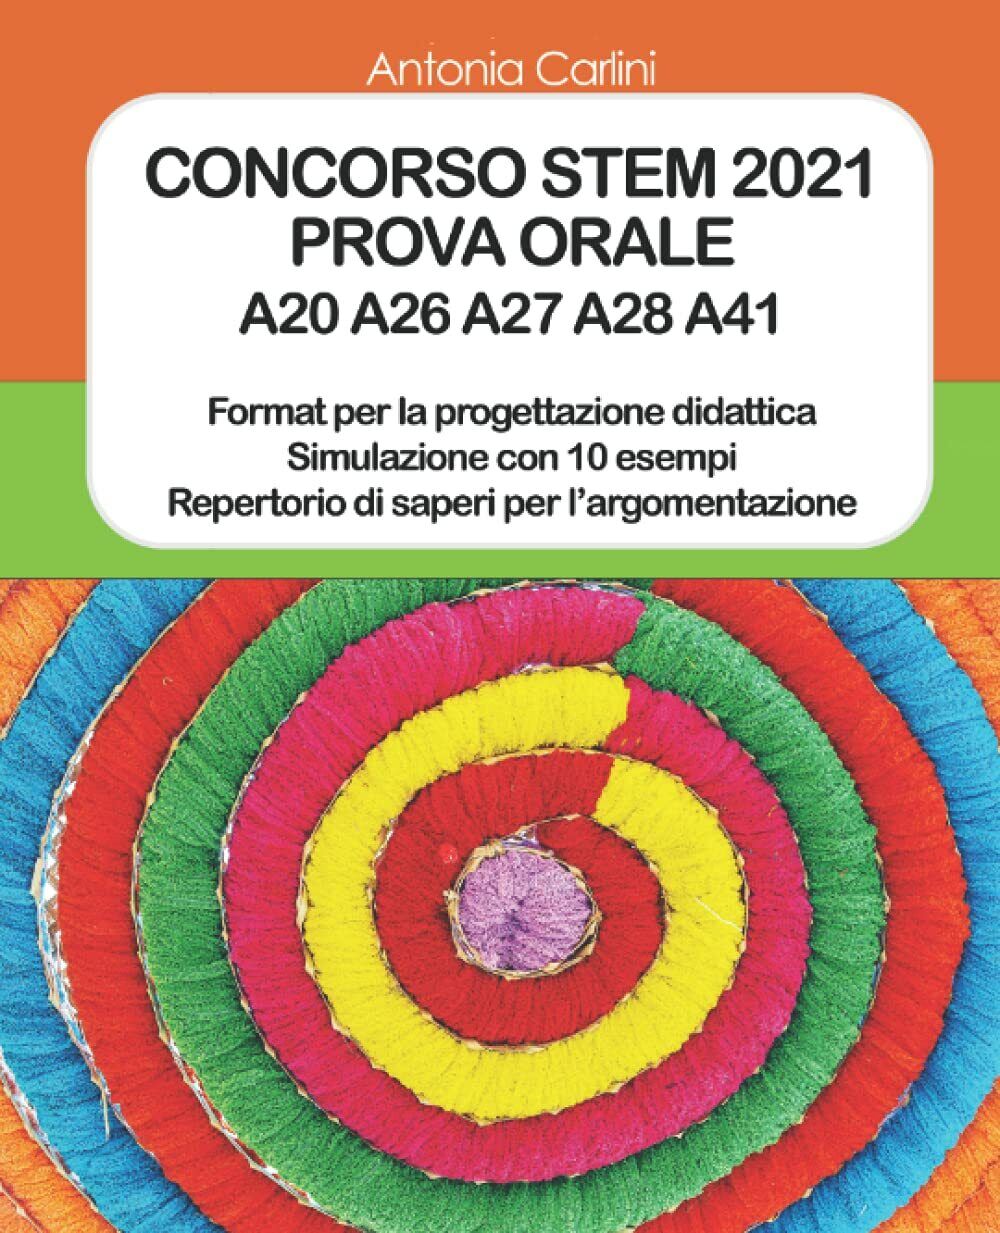 CONCORSO STEM 2021: PROVA ORALE A20 A26 A27 A28 A41 di Antonia Carlini,  2021,  